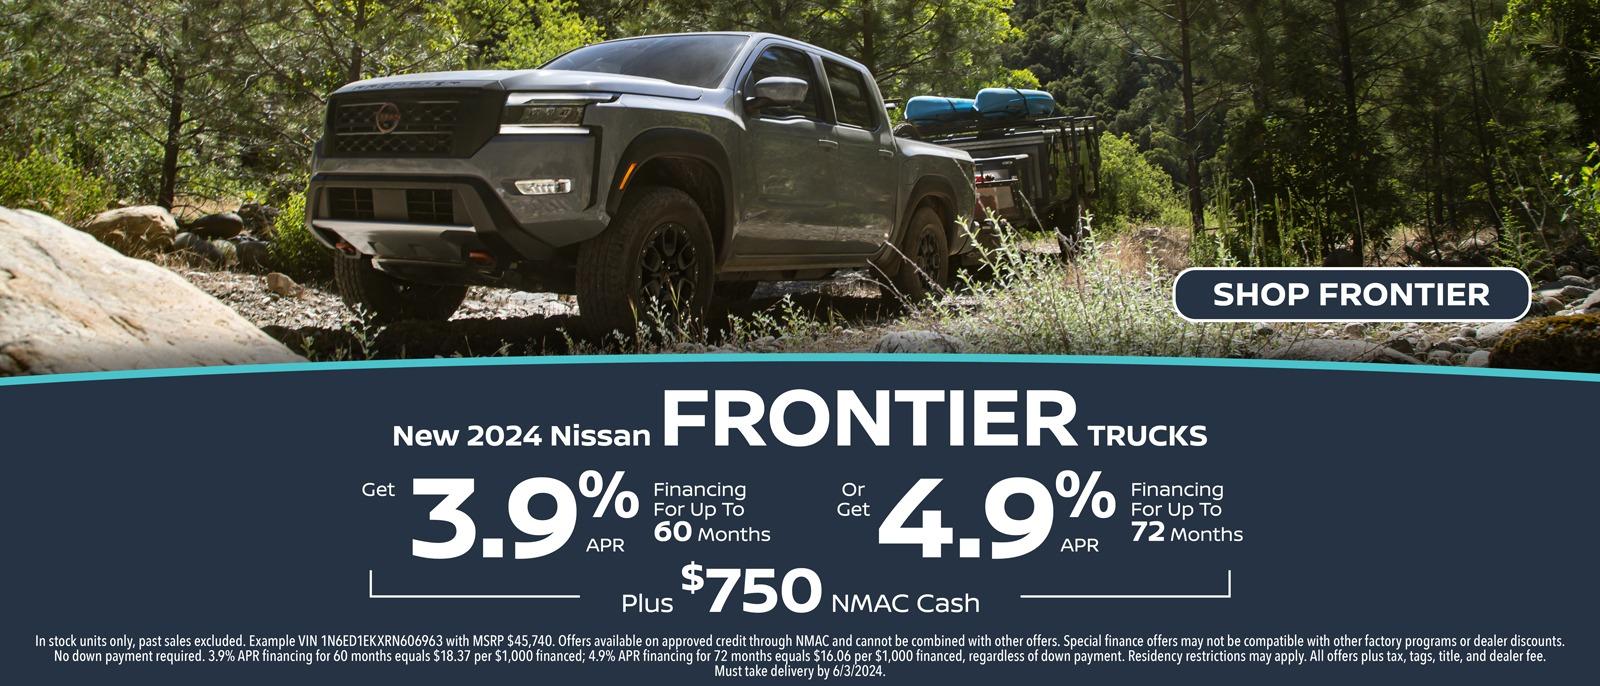 New 2024 Nissan Frontier Trucks